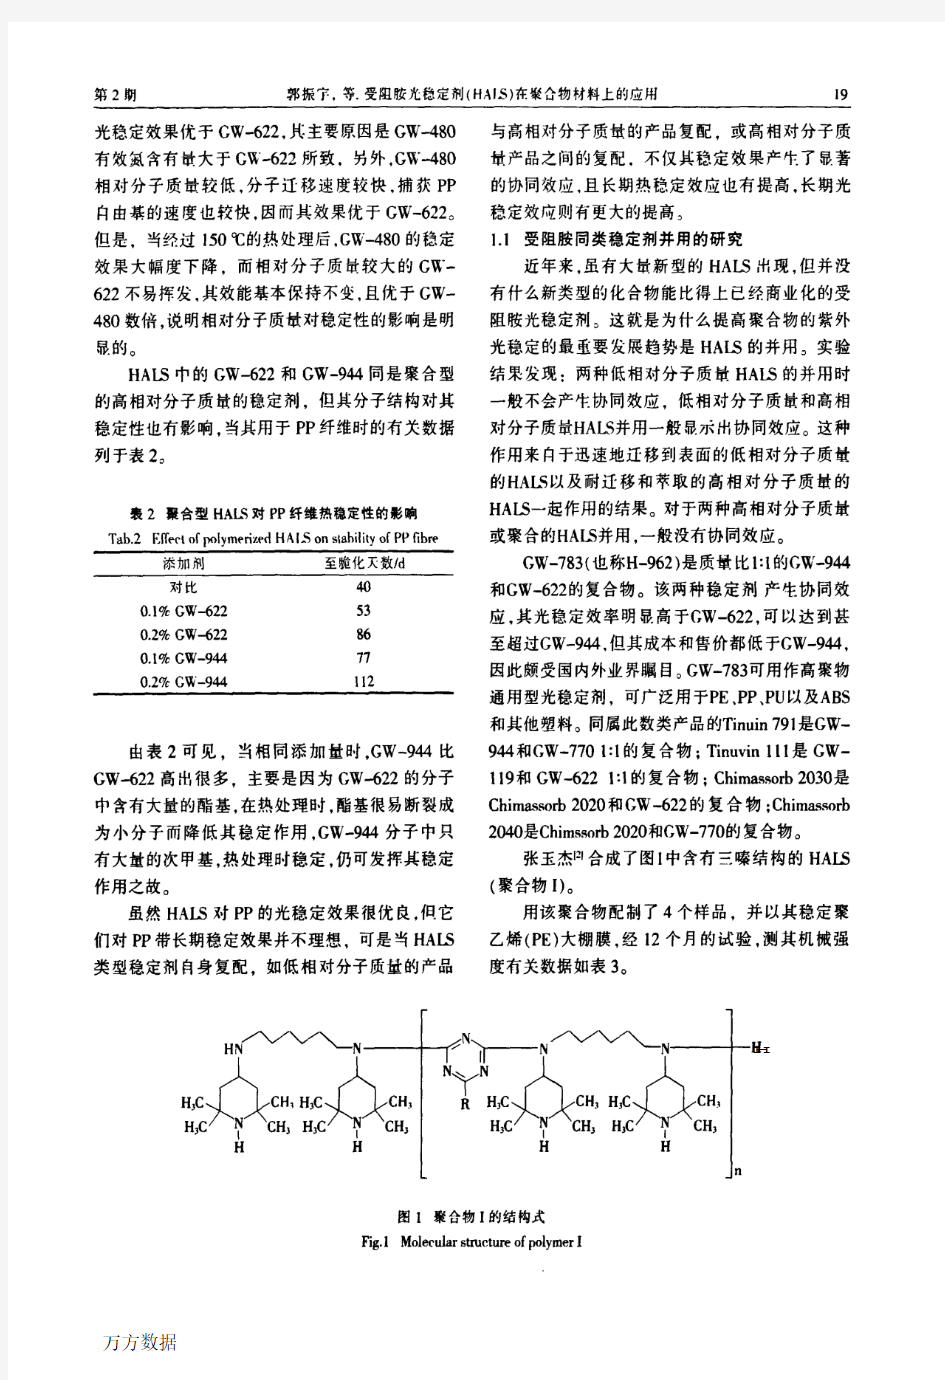 受阻胺光稳定剂在聚合物材料中的应用-郭振宁